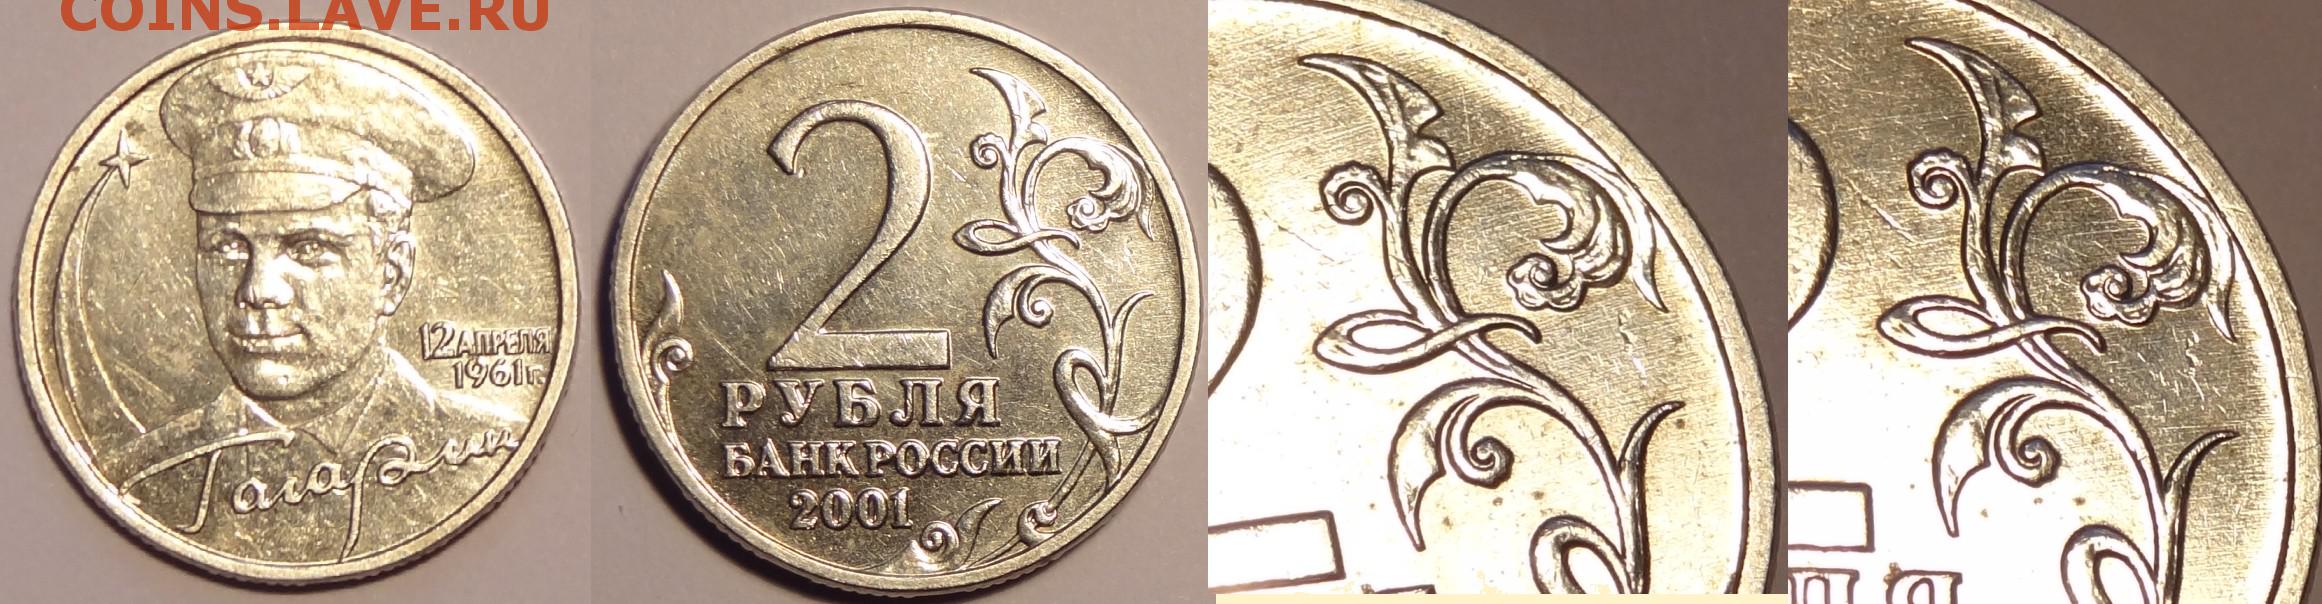 2 рубля 2001 года с гагариным. 2 Рубля Гагарин с монетным двором. 2 Рубля Гагарин без монетного двора. Монета Гагарин 2 рубля без монетного двора. 2 Рубля 2001 Гагарин клеймо.